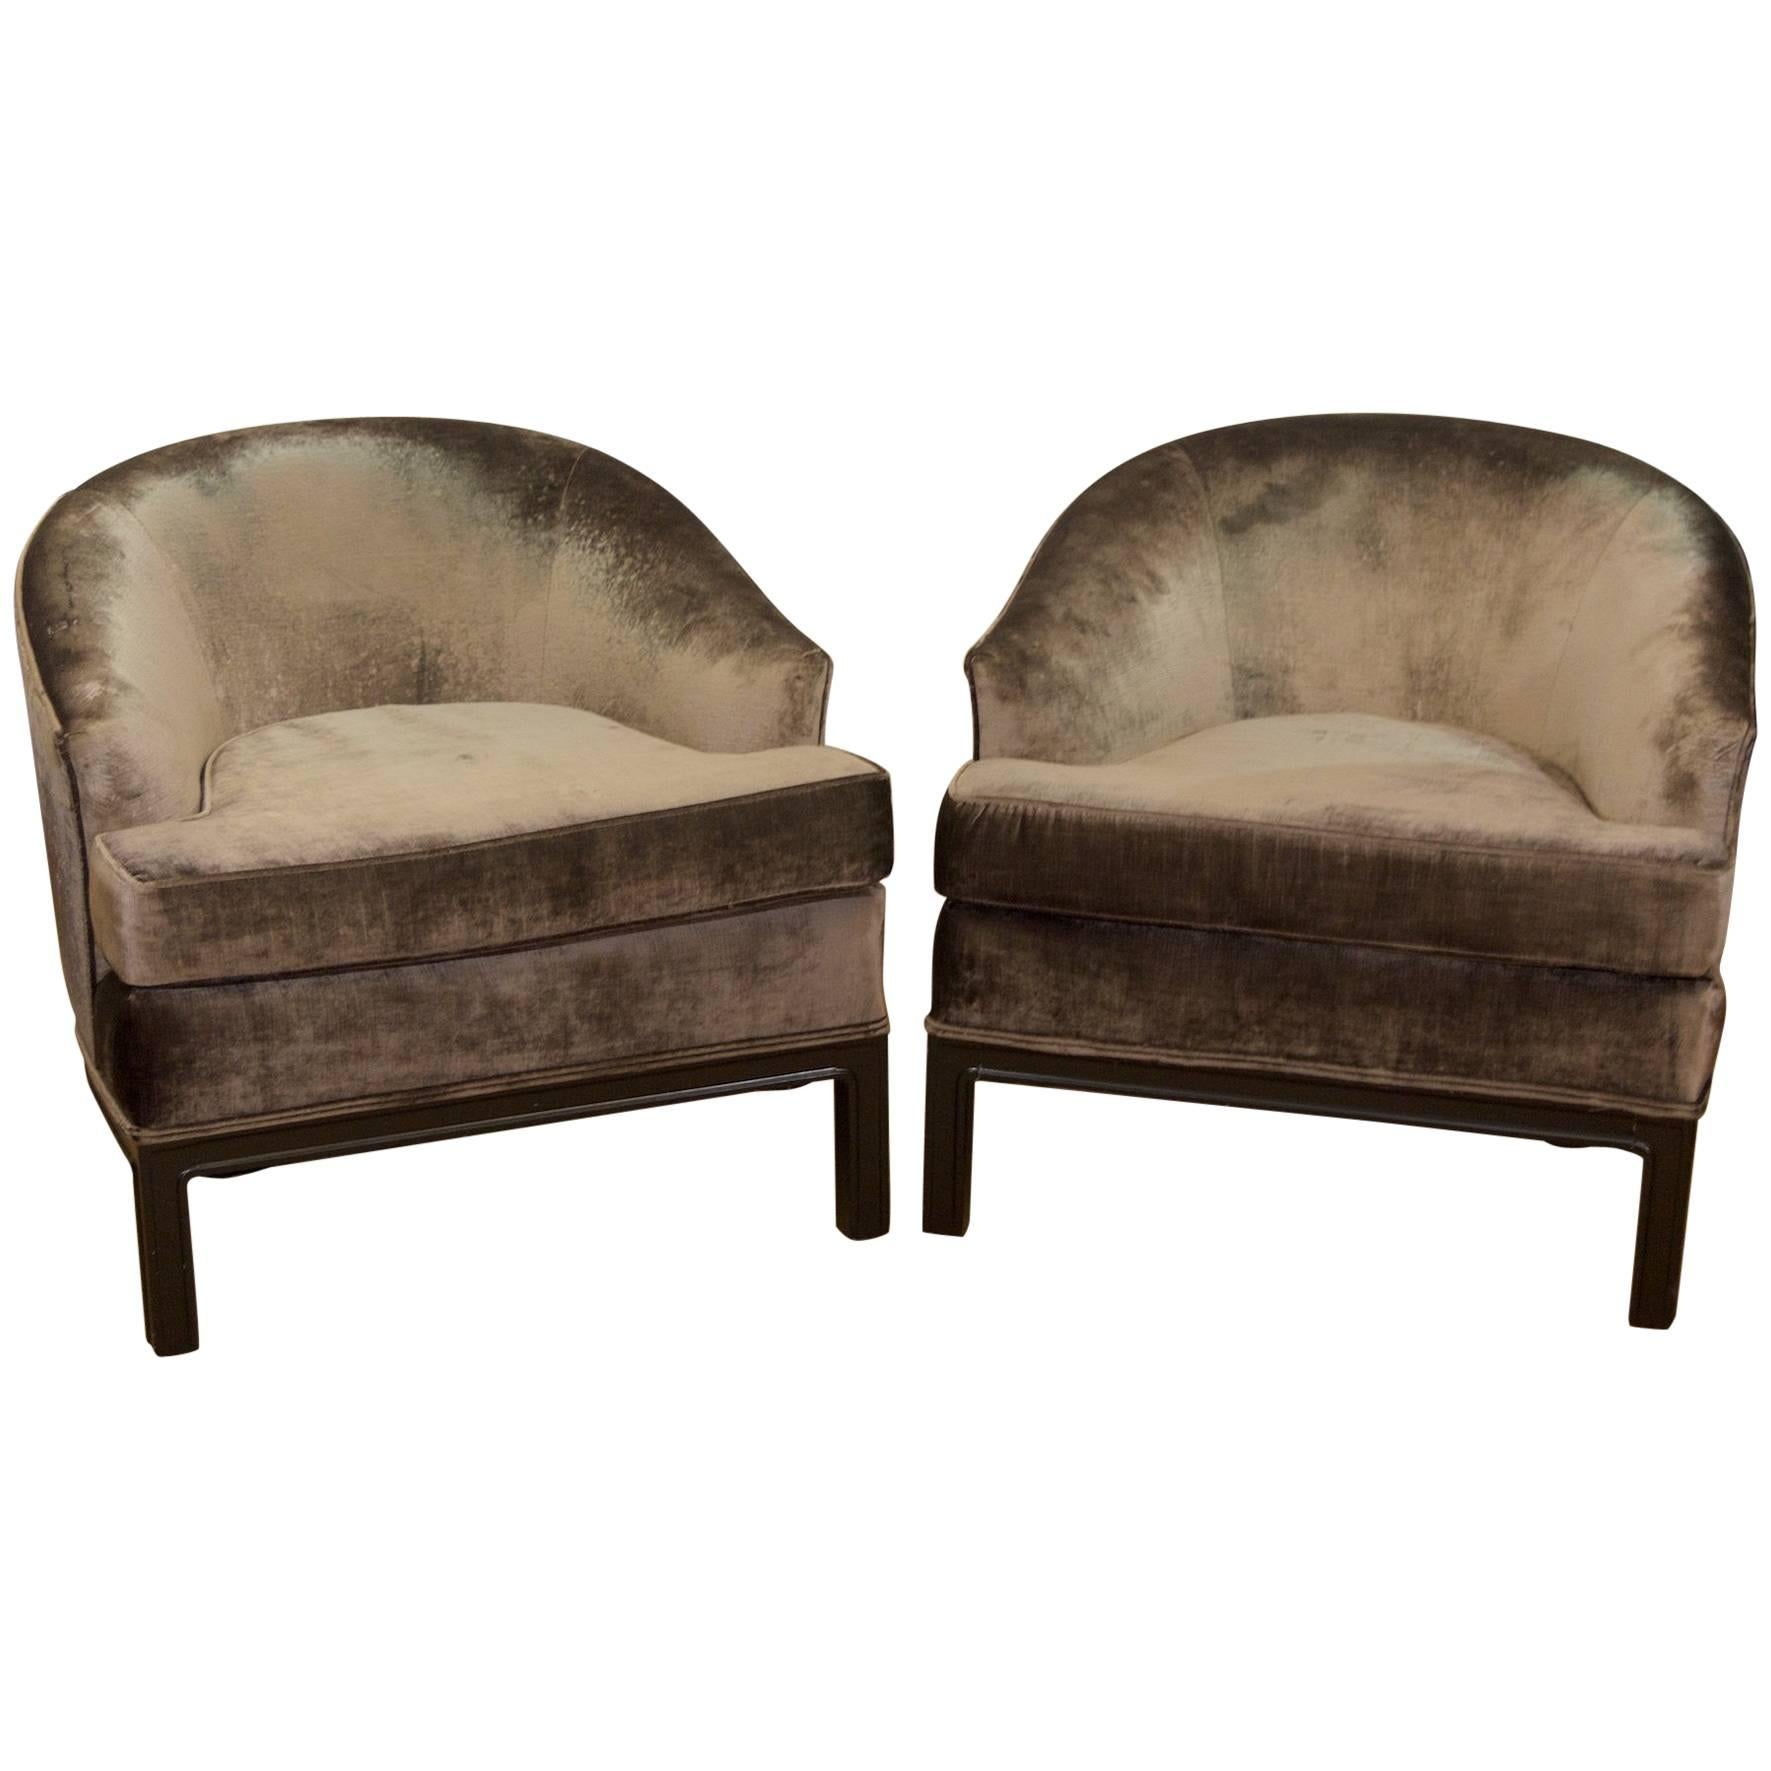 Pair of Velvet Upholstered Mid-Century Modern Club Chairs